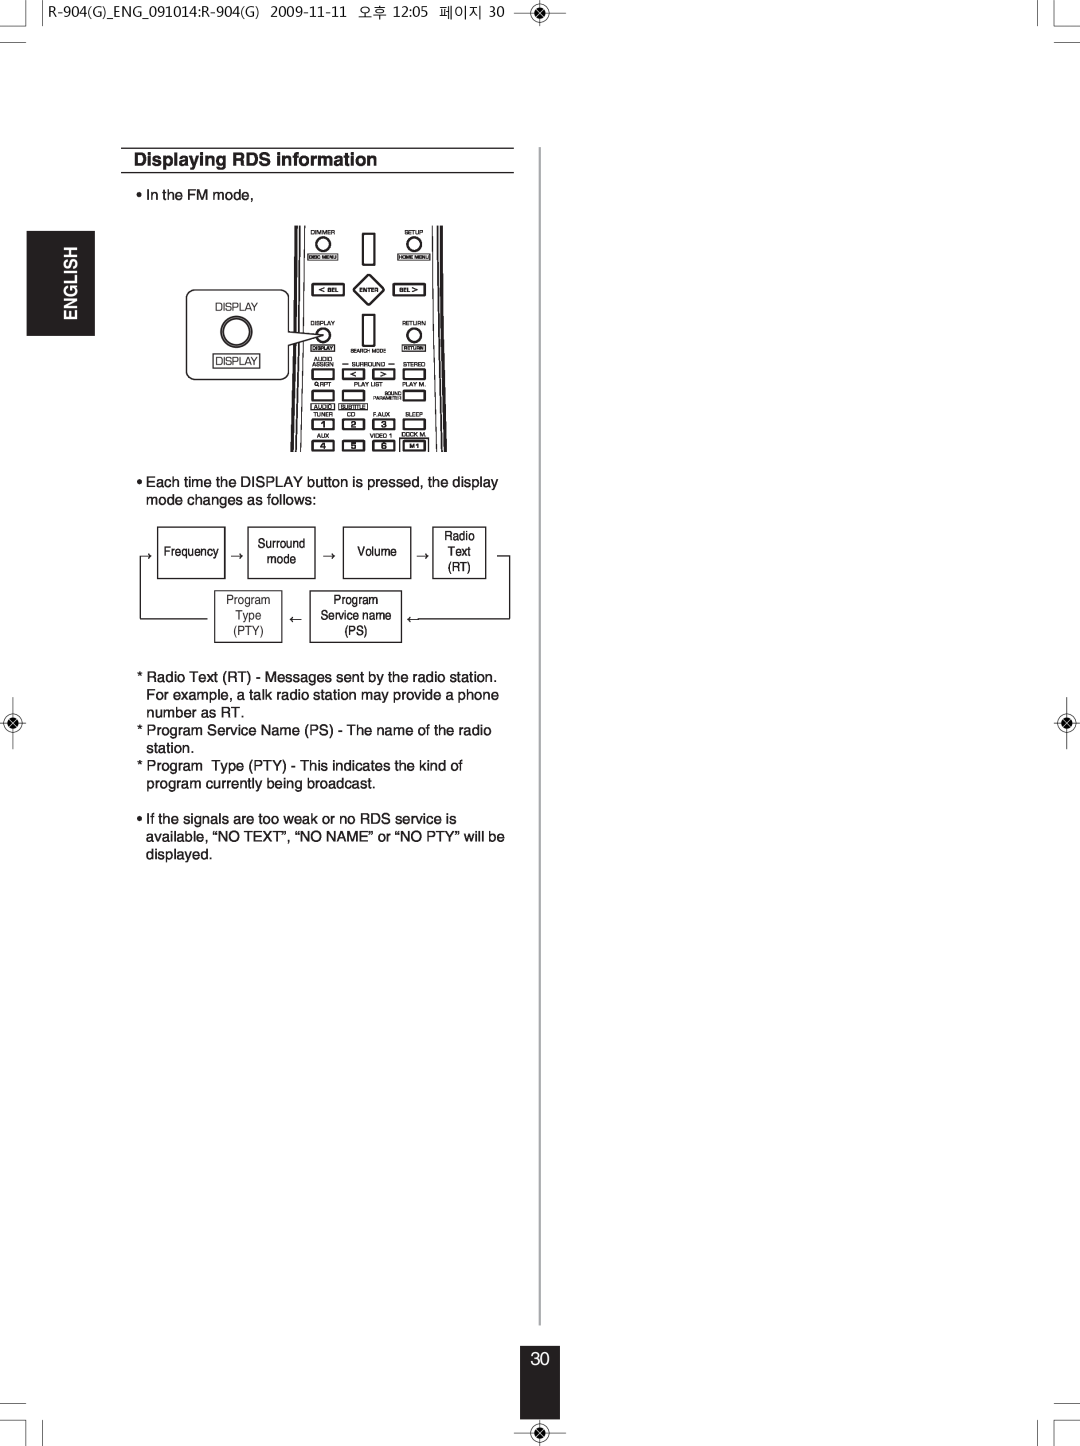 Sherwood R-904 manual Displaying RDS information, English 